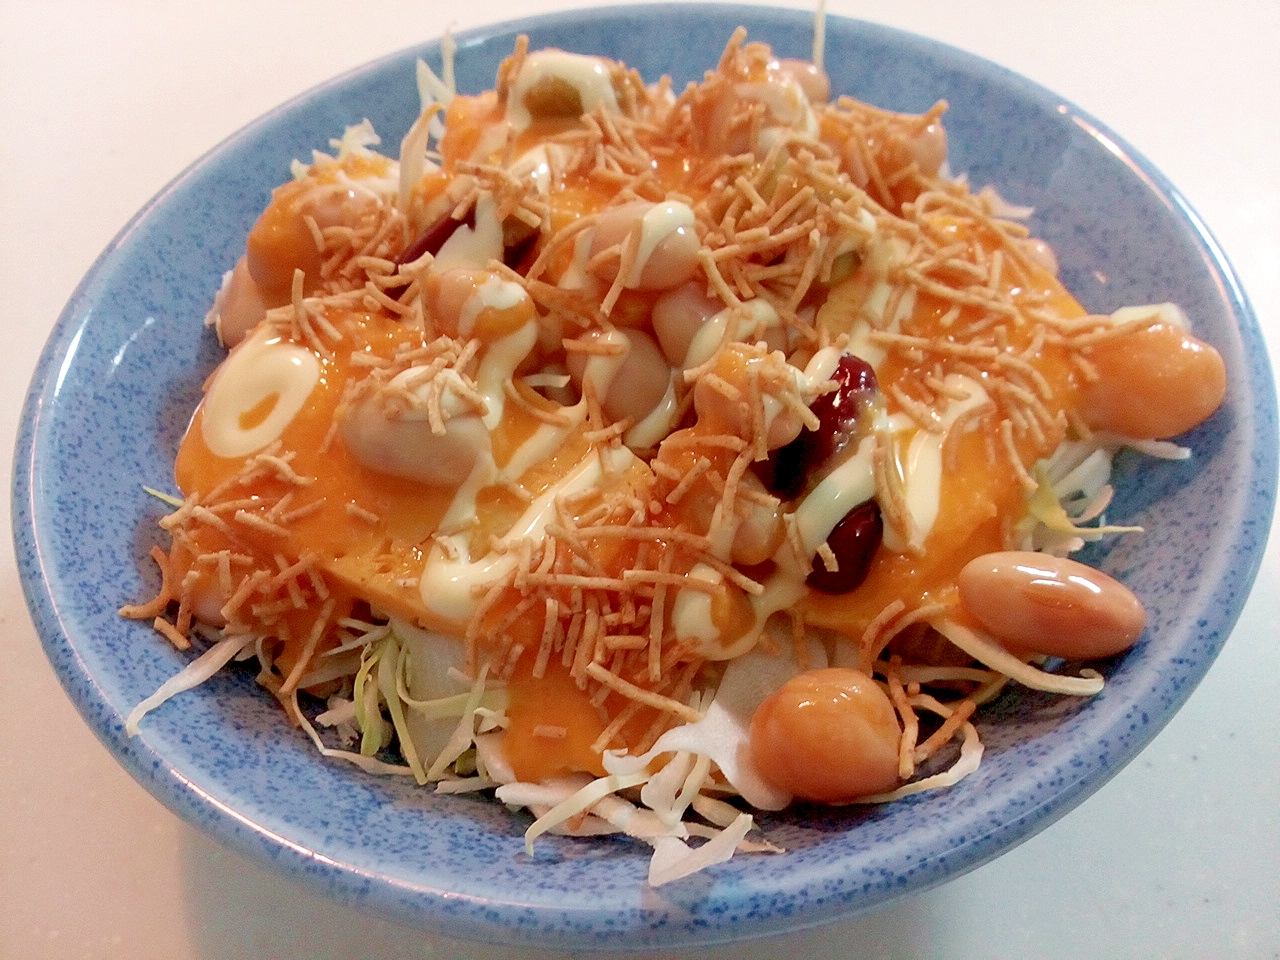 キャベツ・玉子焼き・サラダ豆・パリパリ麺のサラダ